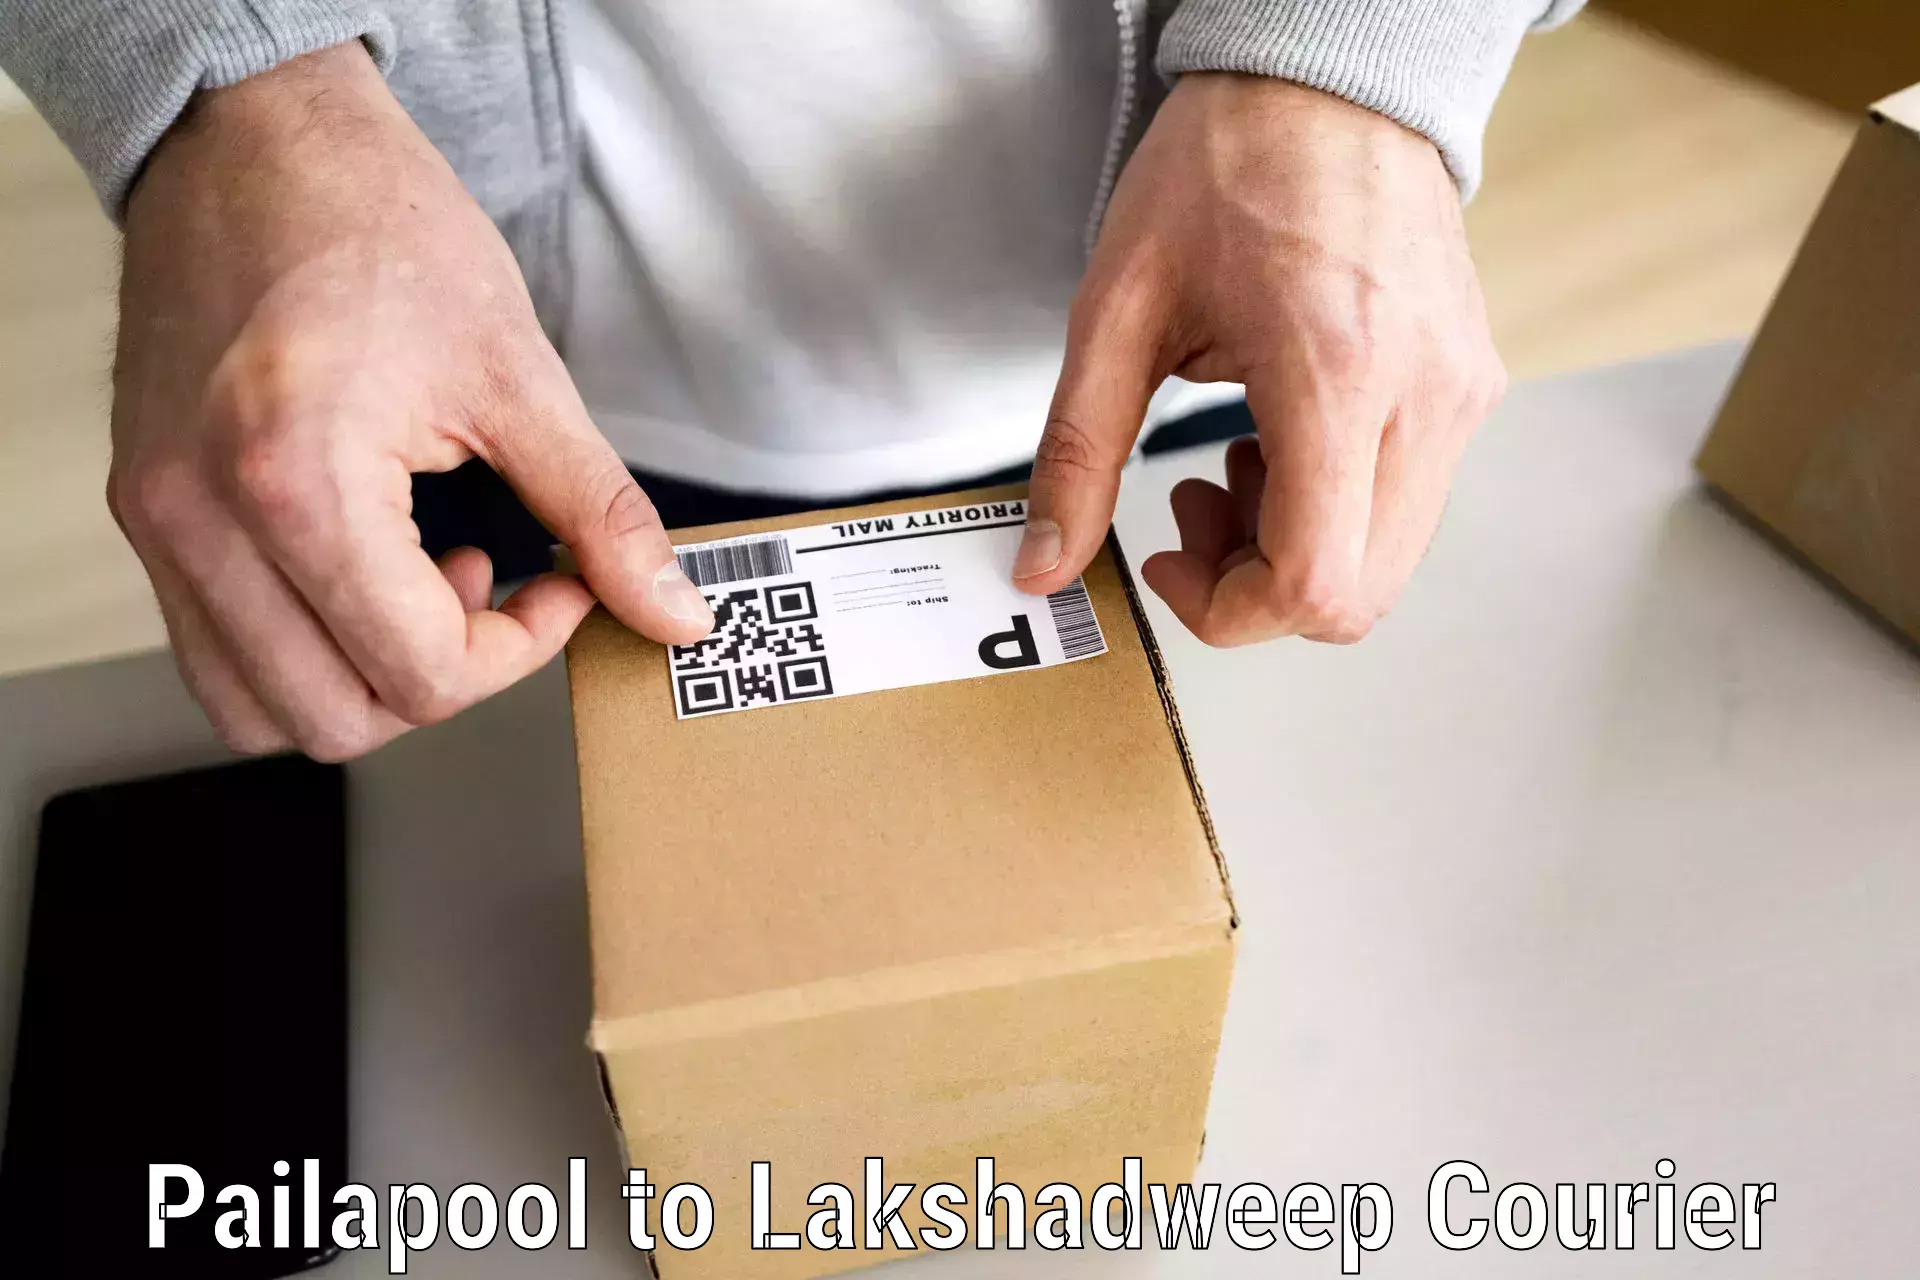 Furniture transport experts Pailapool to Lakshadweep